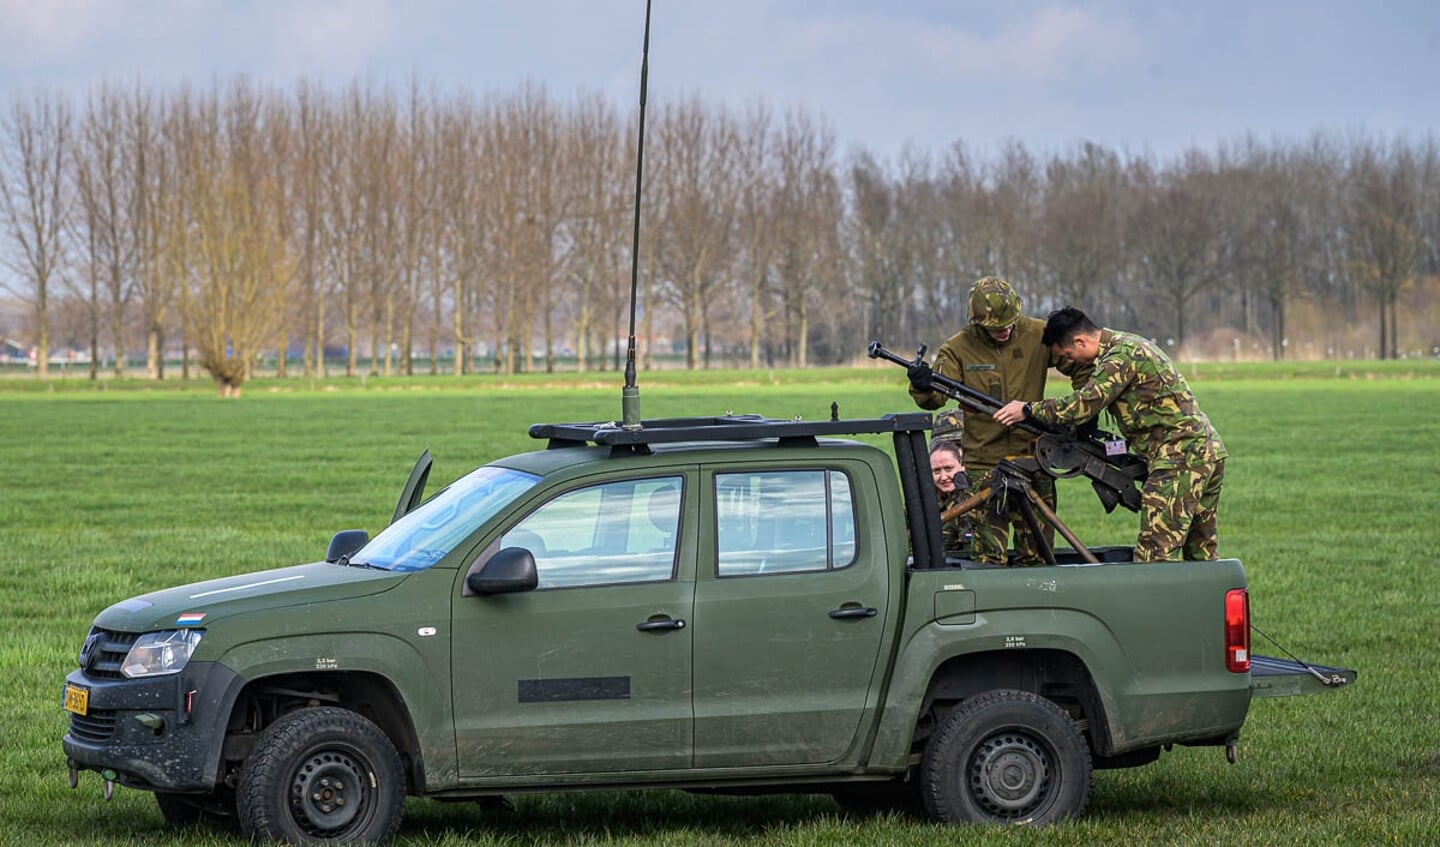 Militaire oefening in Beneden-Leeuwen.